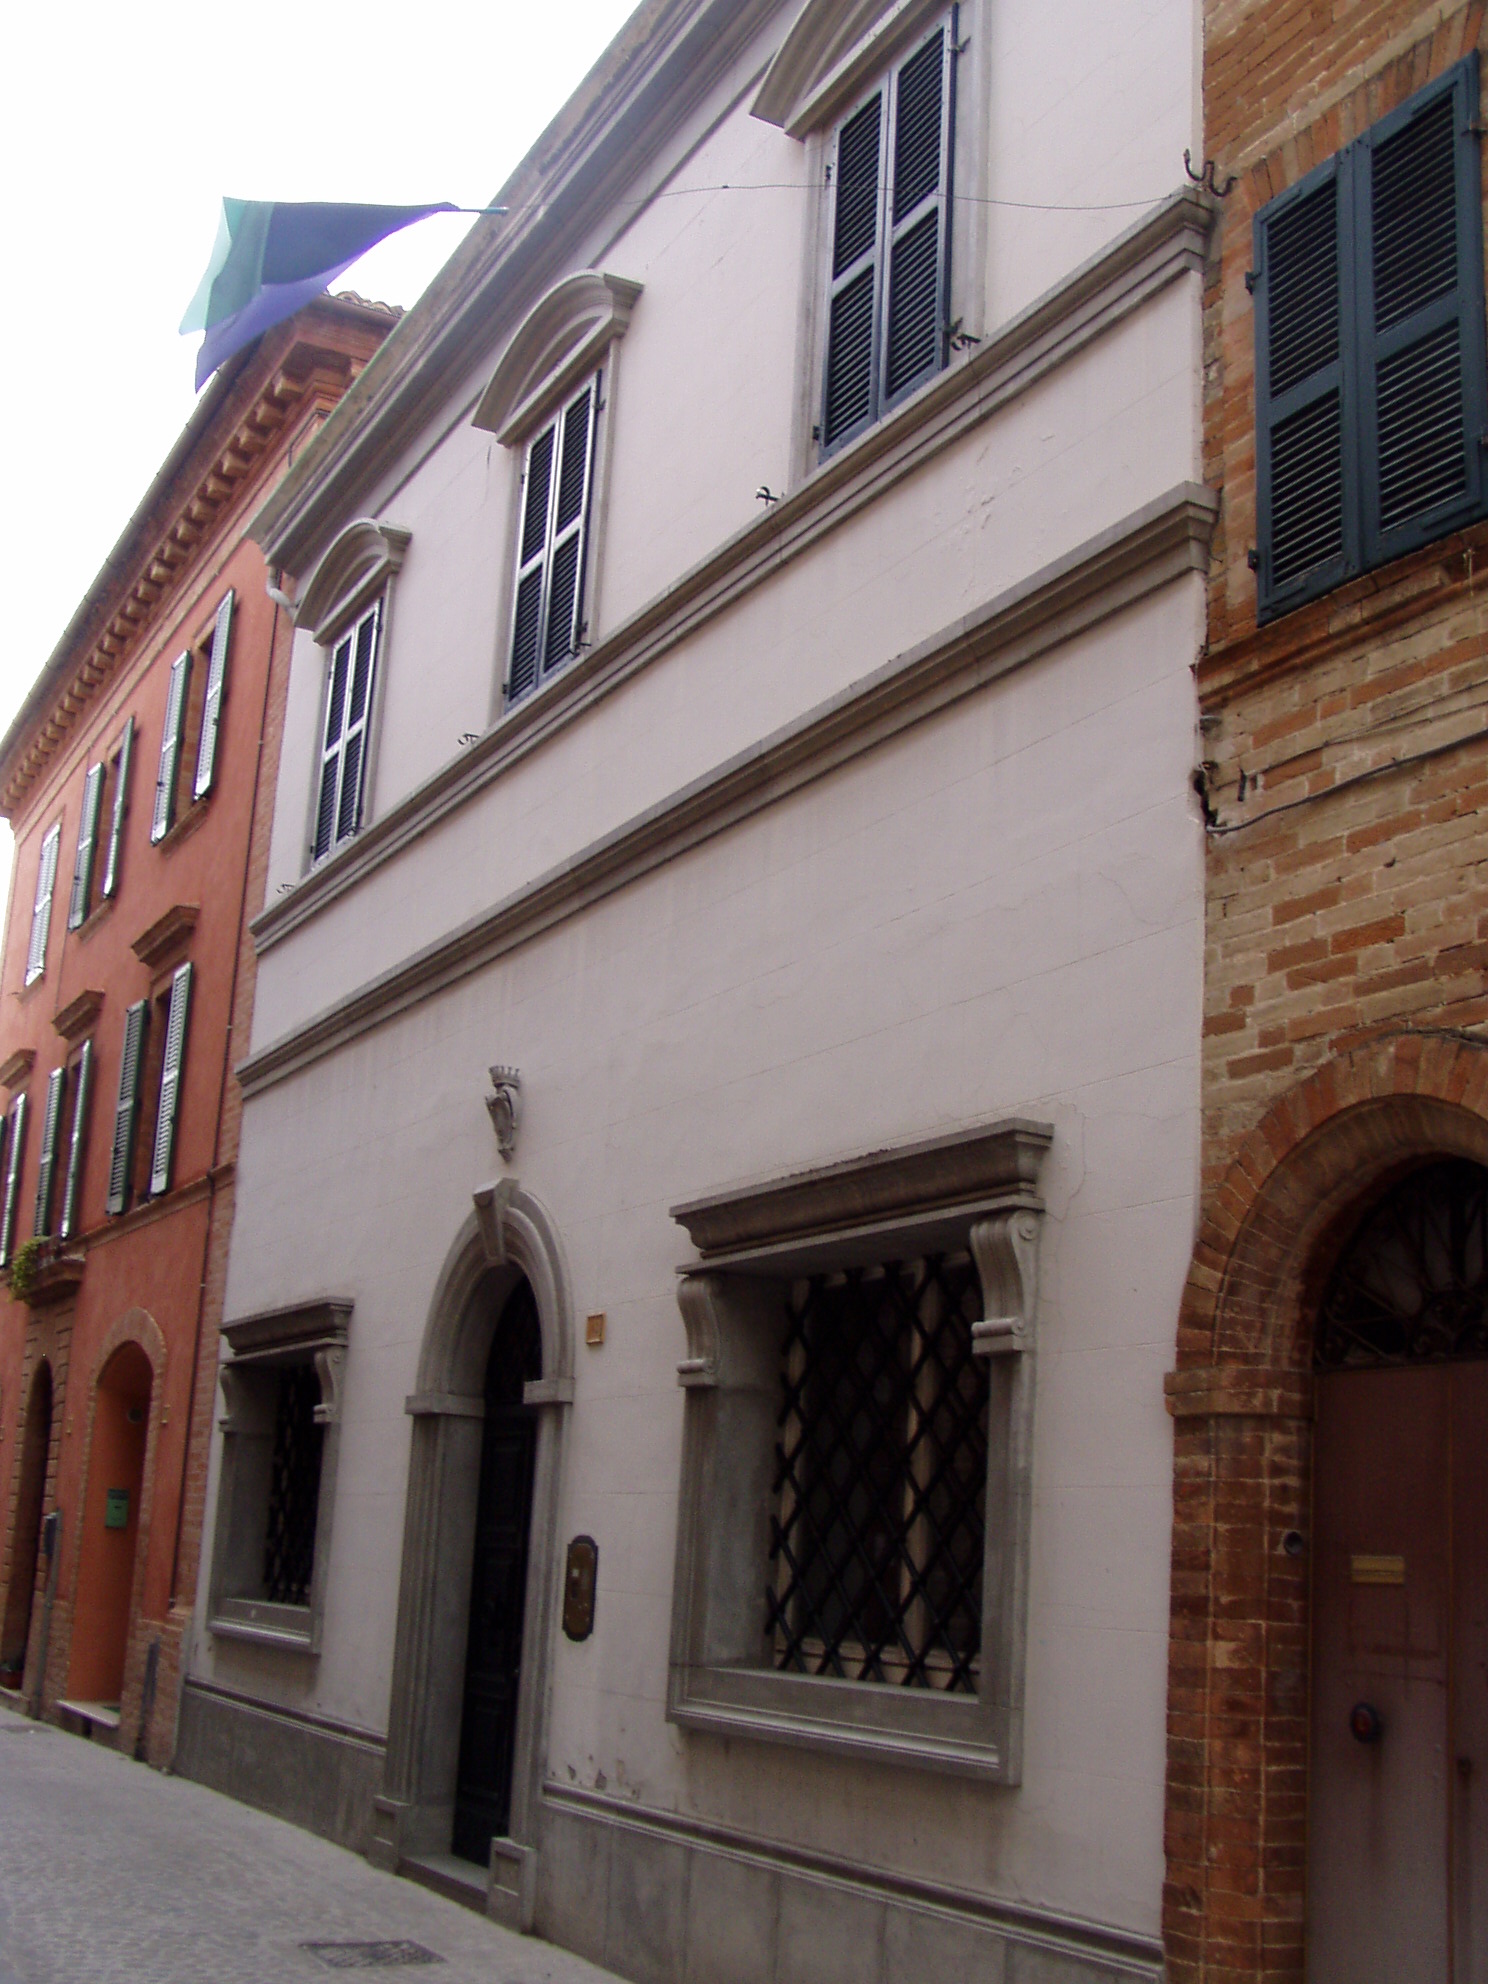 Palazzo Brachetti (palazzo, nobiliare) - Urbisaglia (MC) 